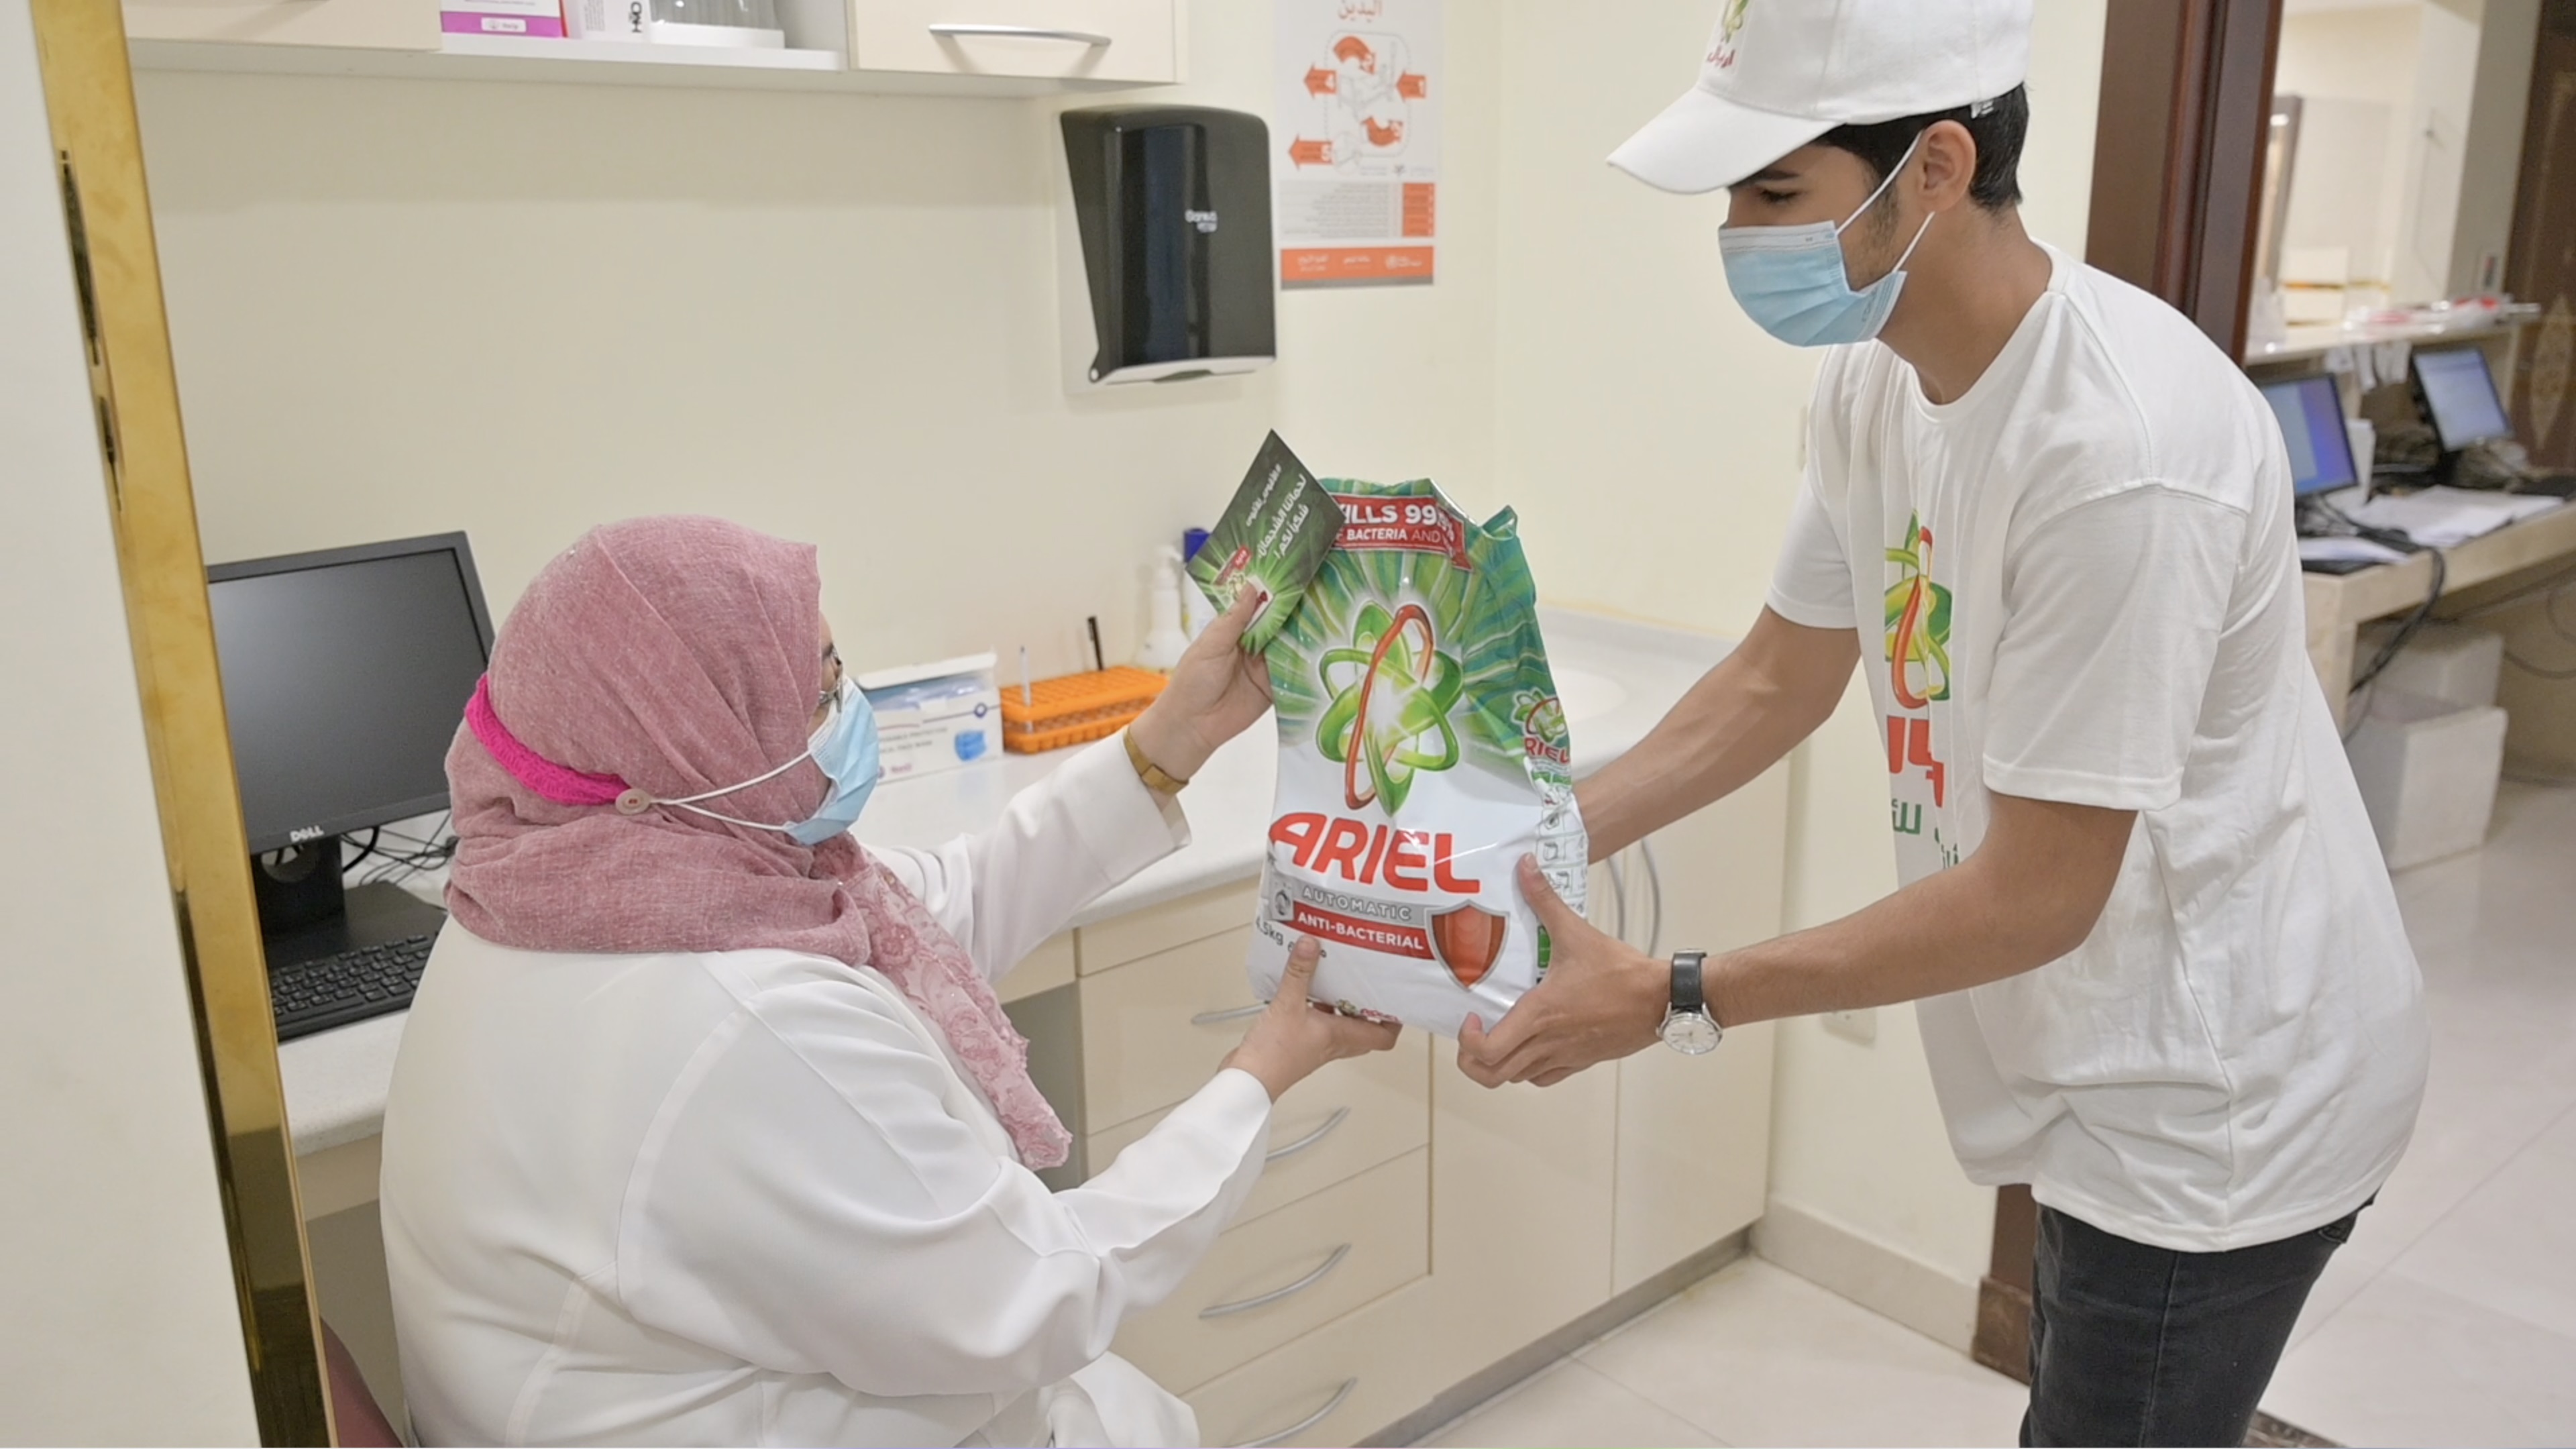 المستشفيات السعودية تتلقى مليون غسلة من منتجات تنظيف الملابس مضادة للفيروسات ضمن مبادرة تبرع لدعم وحماية الكوادر الطبية